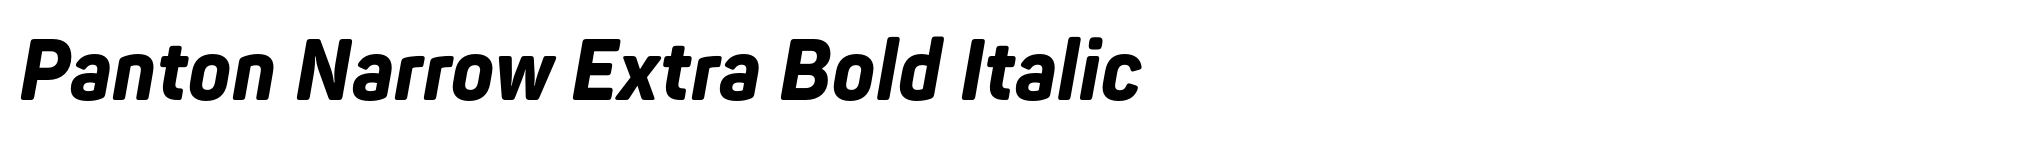 Panton Narrow Extra Bold Italic image